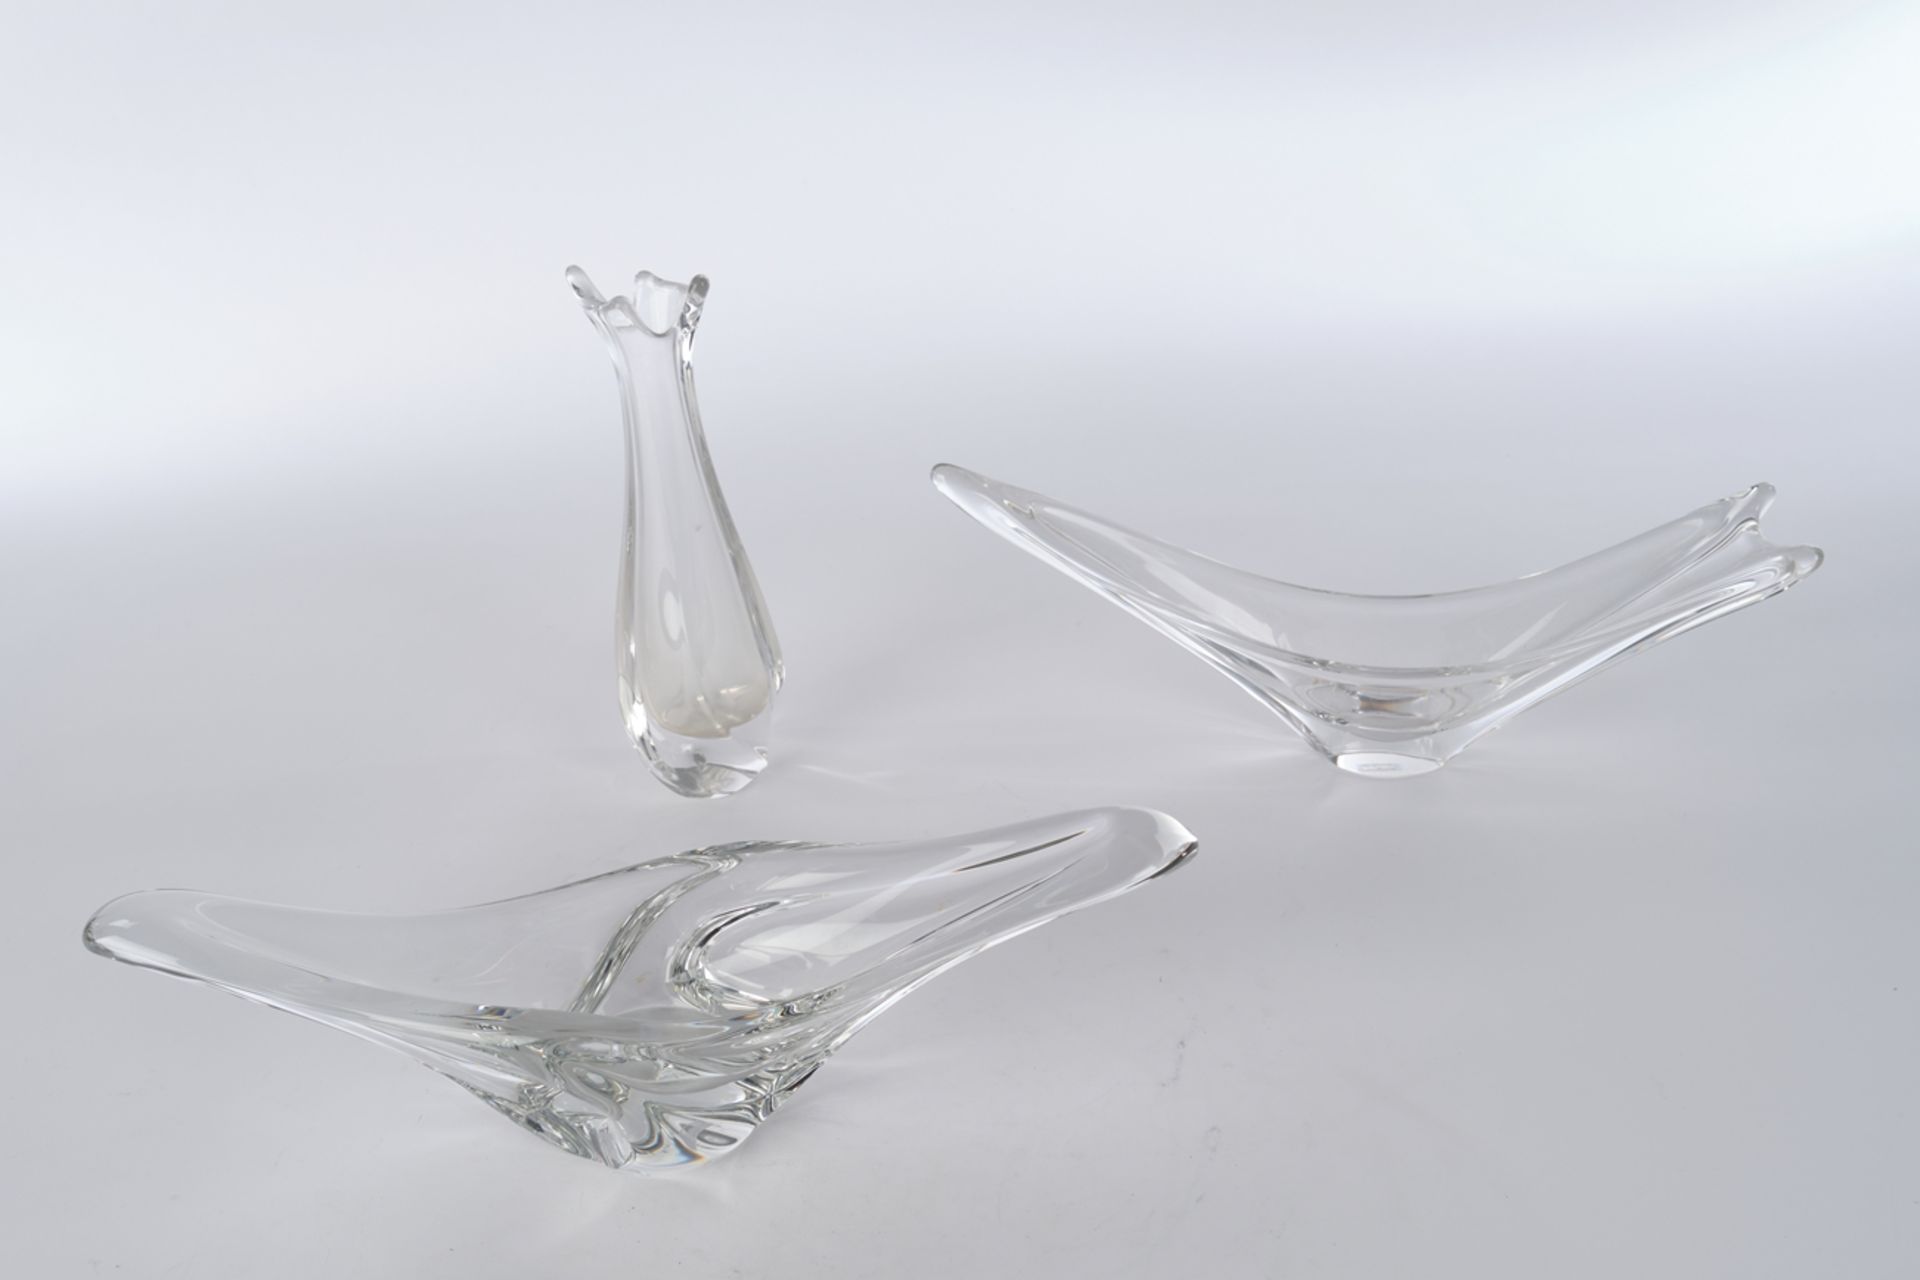 2 Schalen, Vase, Daum, Kristallglas, farblos, verschiedene biomorphe Formen, je bezeichnet Daum Fra - Bild 2 aus 2